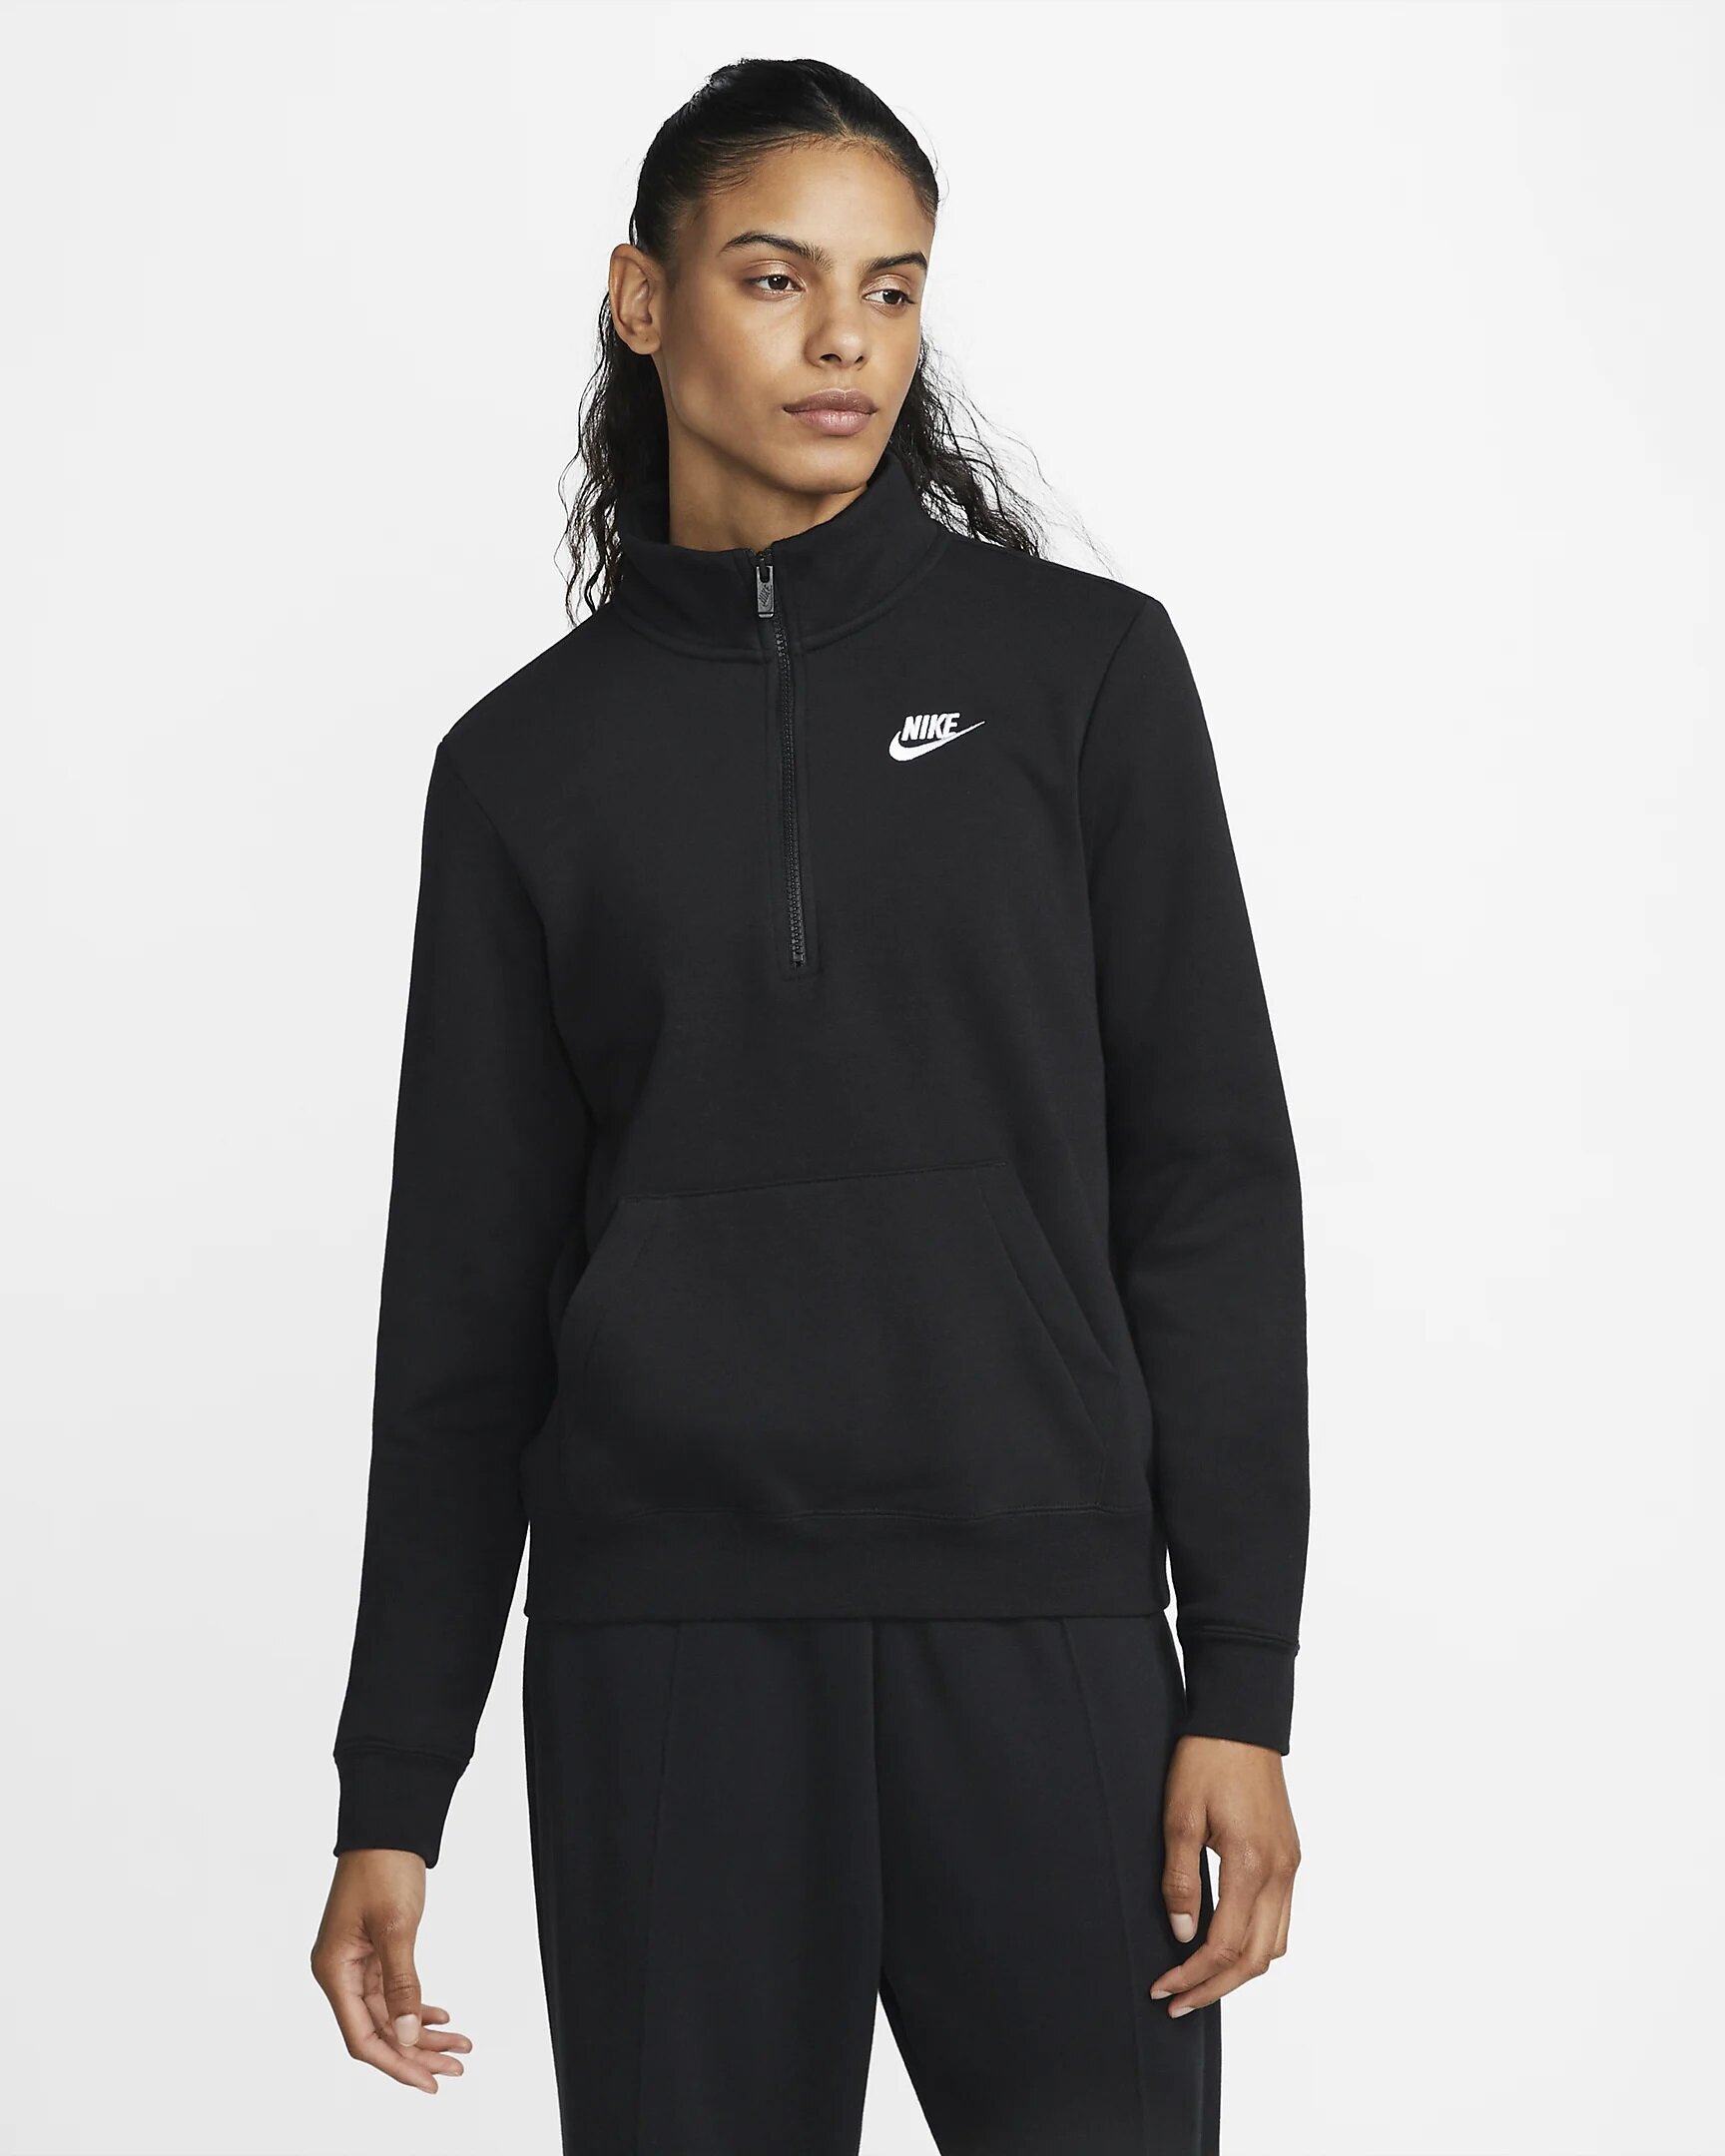 Nike džemperis moterims NSW CLUB FLC QZ STD, juodas kaina | pigu.lt